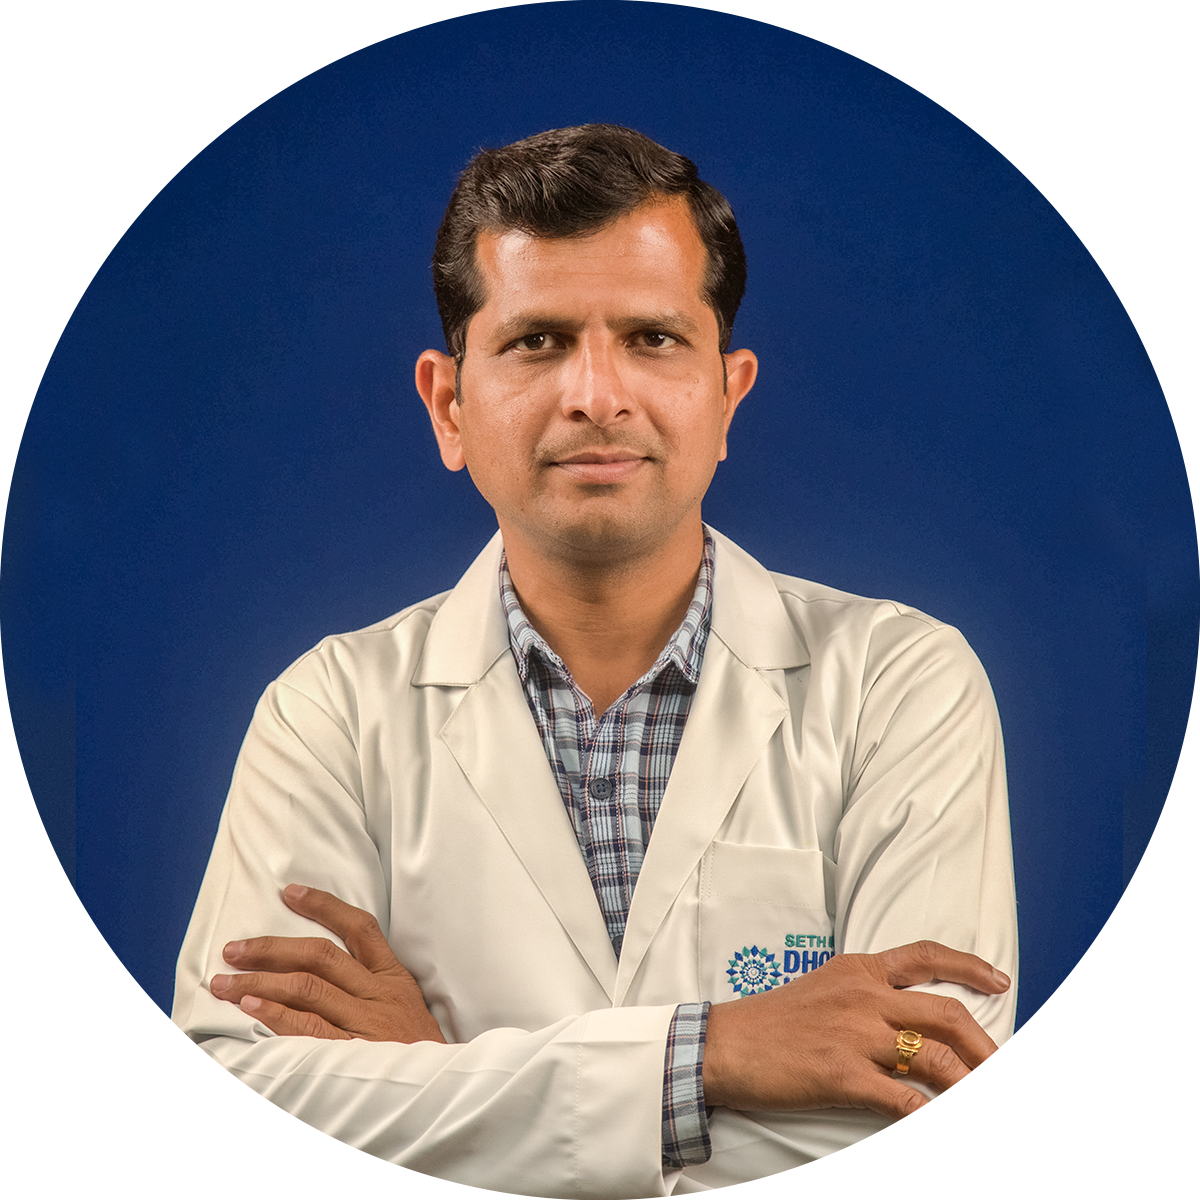 Dr. Sharadchandra Joshi